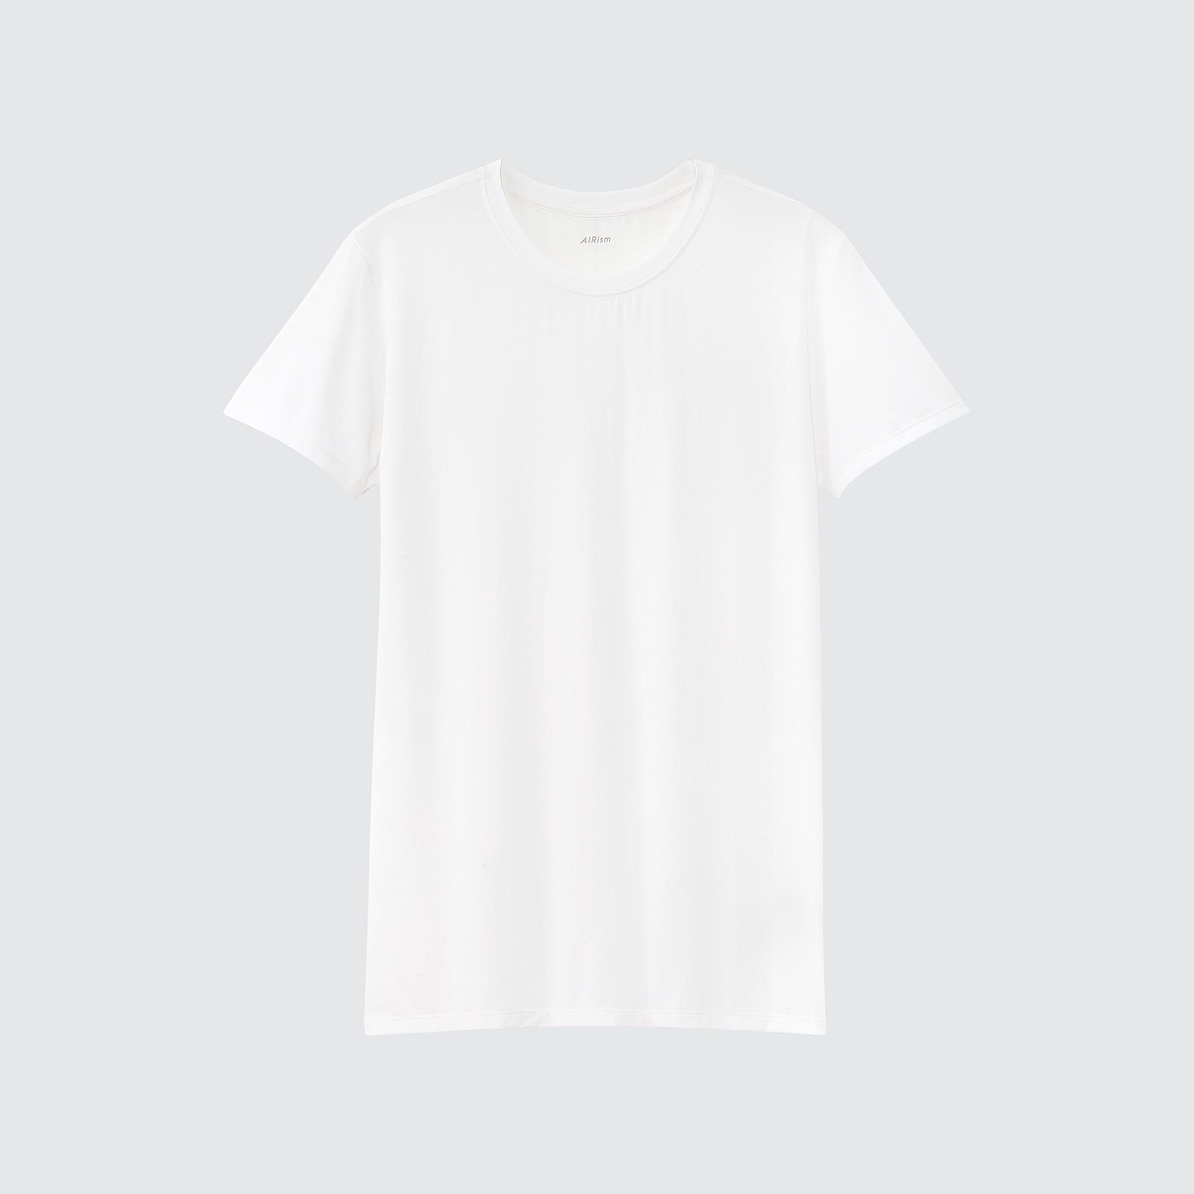 メンズ必見 透けないインナーシャツの厳選ブランド3選 社会人から就活生まで 共通のインナーシャツマナーも解説します 紳士のシャツ